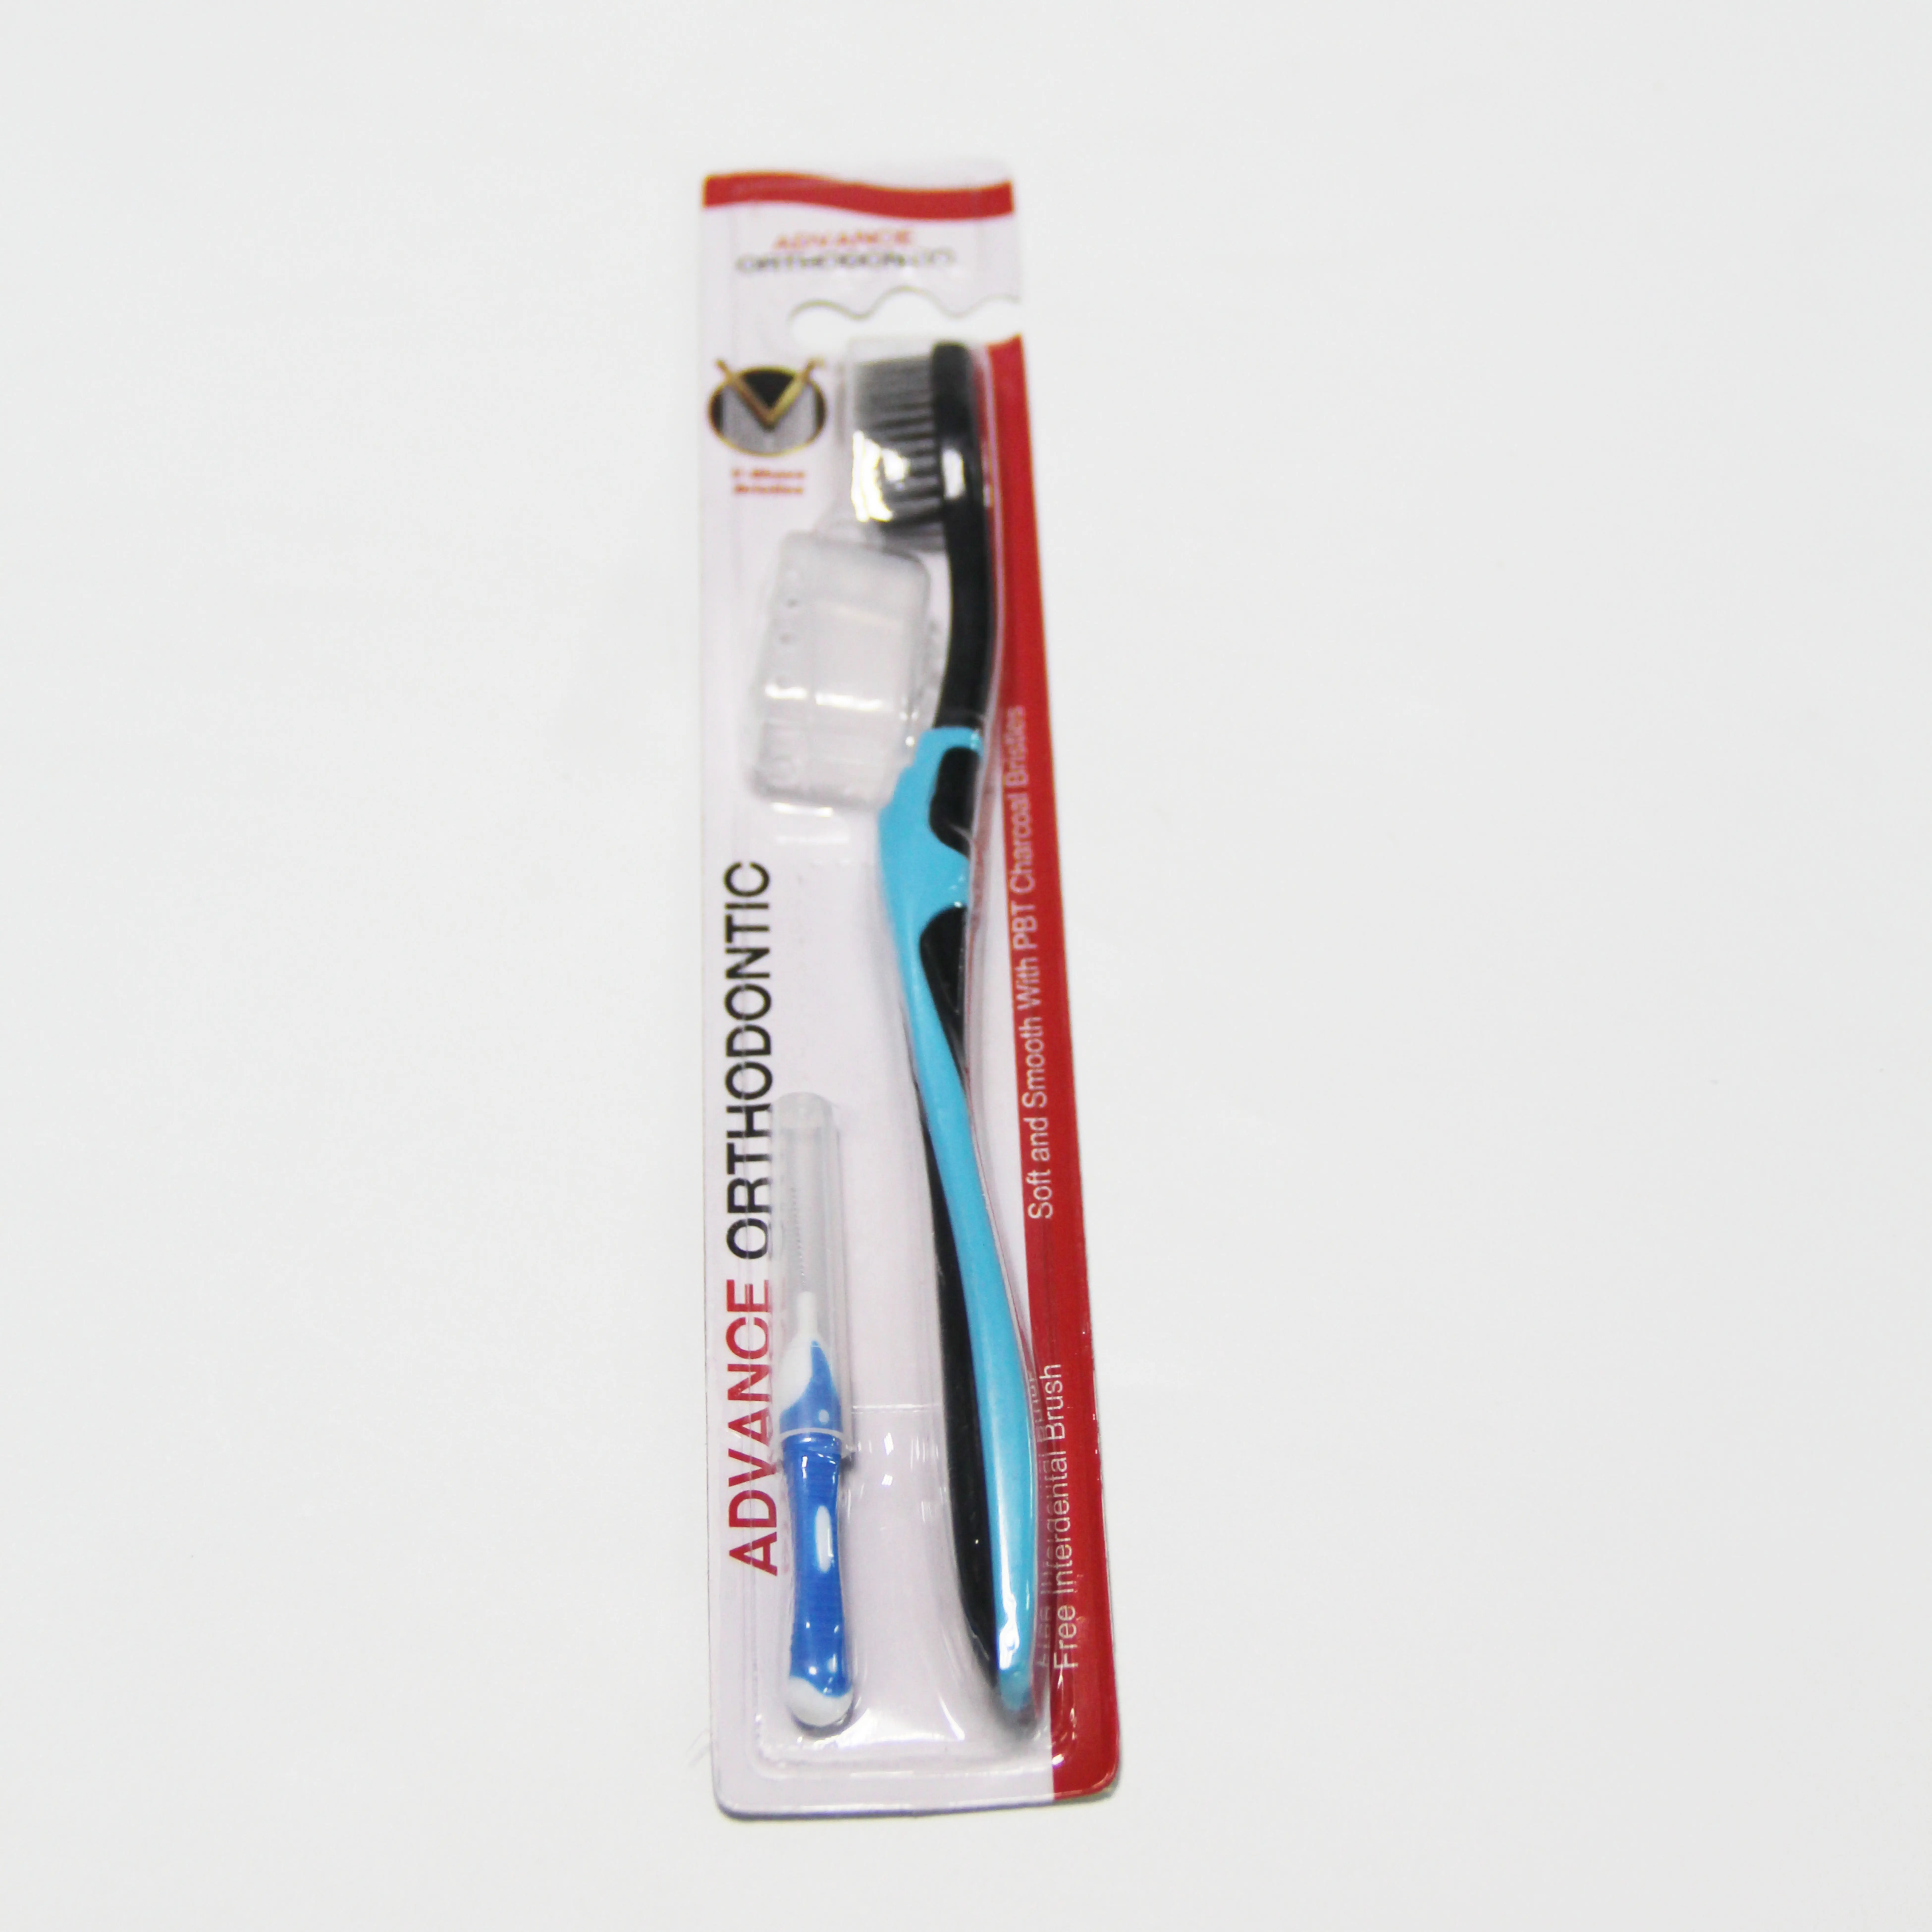 Toothbrush Enfresh Hot Sale V Shape Orthodontic Charcoal Bristle Toothbrush Interdental Brush Set